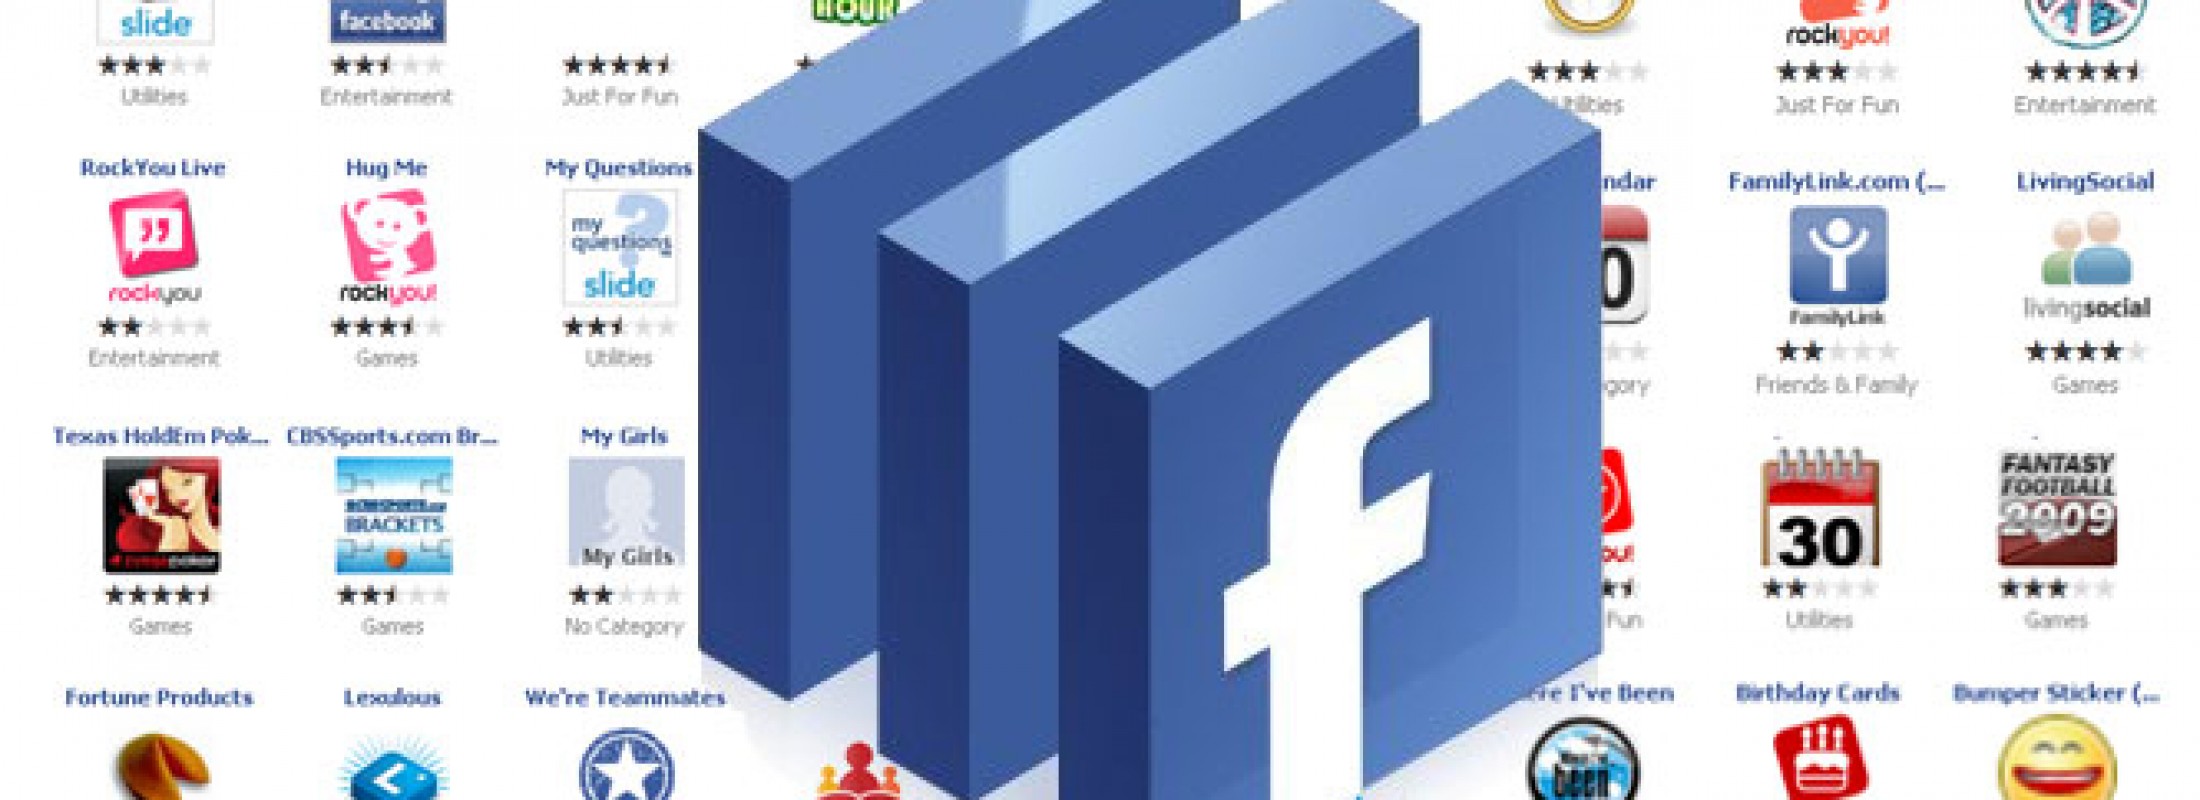 aplicaciones-facebook-para-gestionar-fanpages